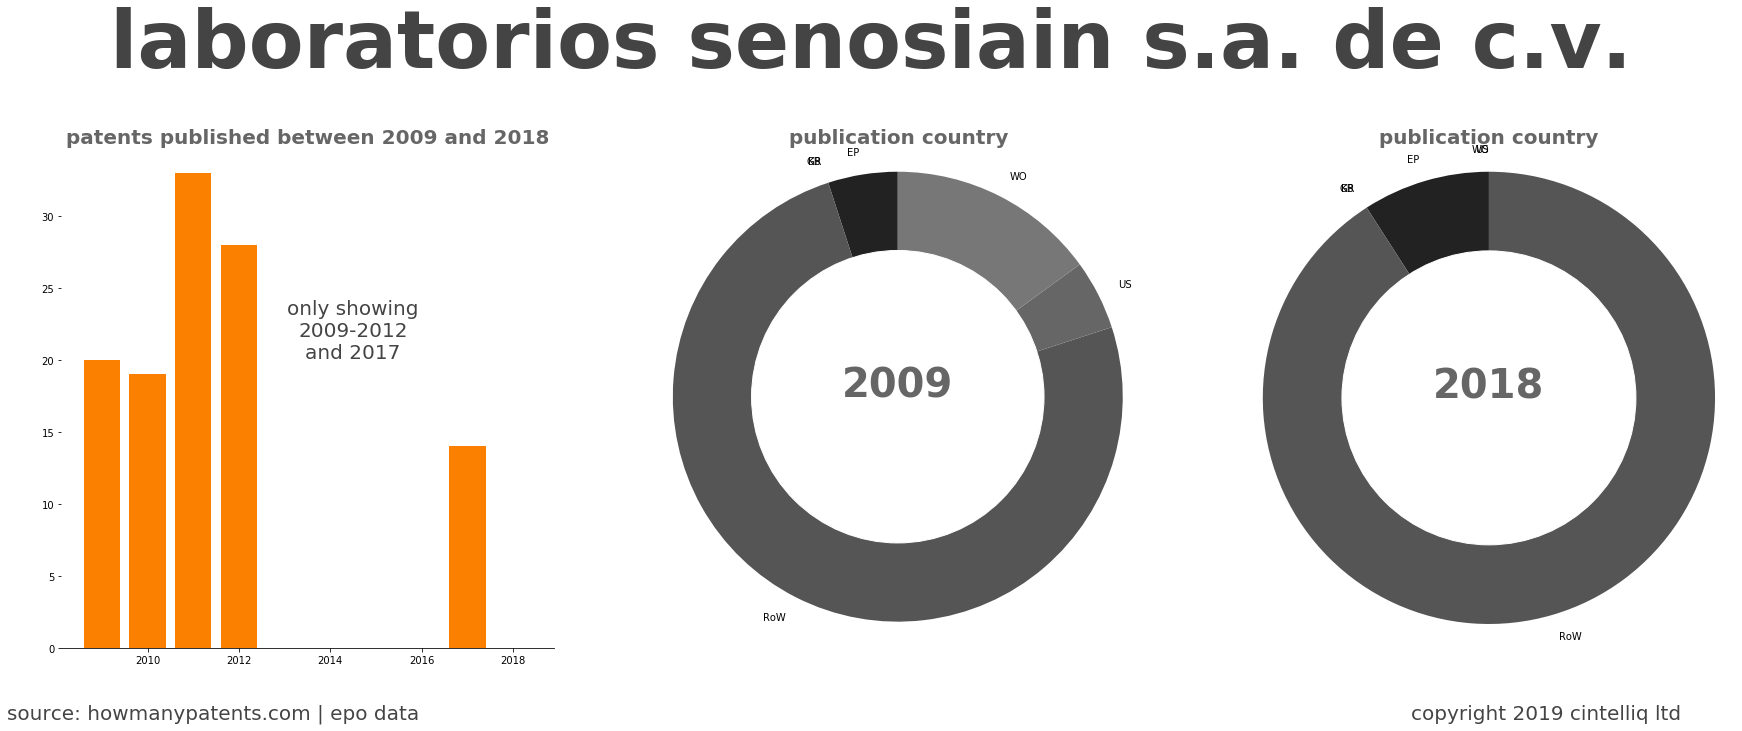 summary of patents for Laboratorios Senosiain S.A. De C.V.